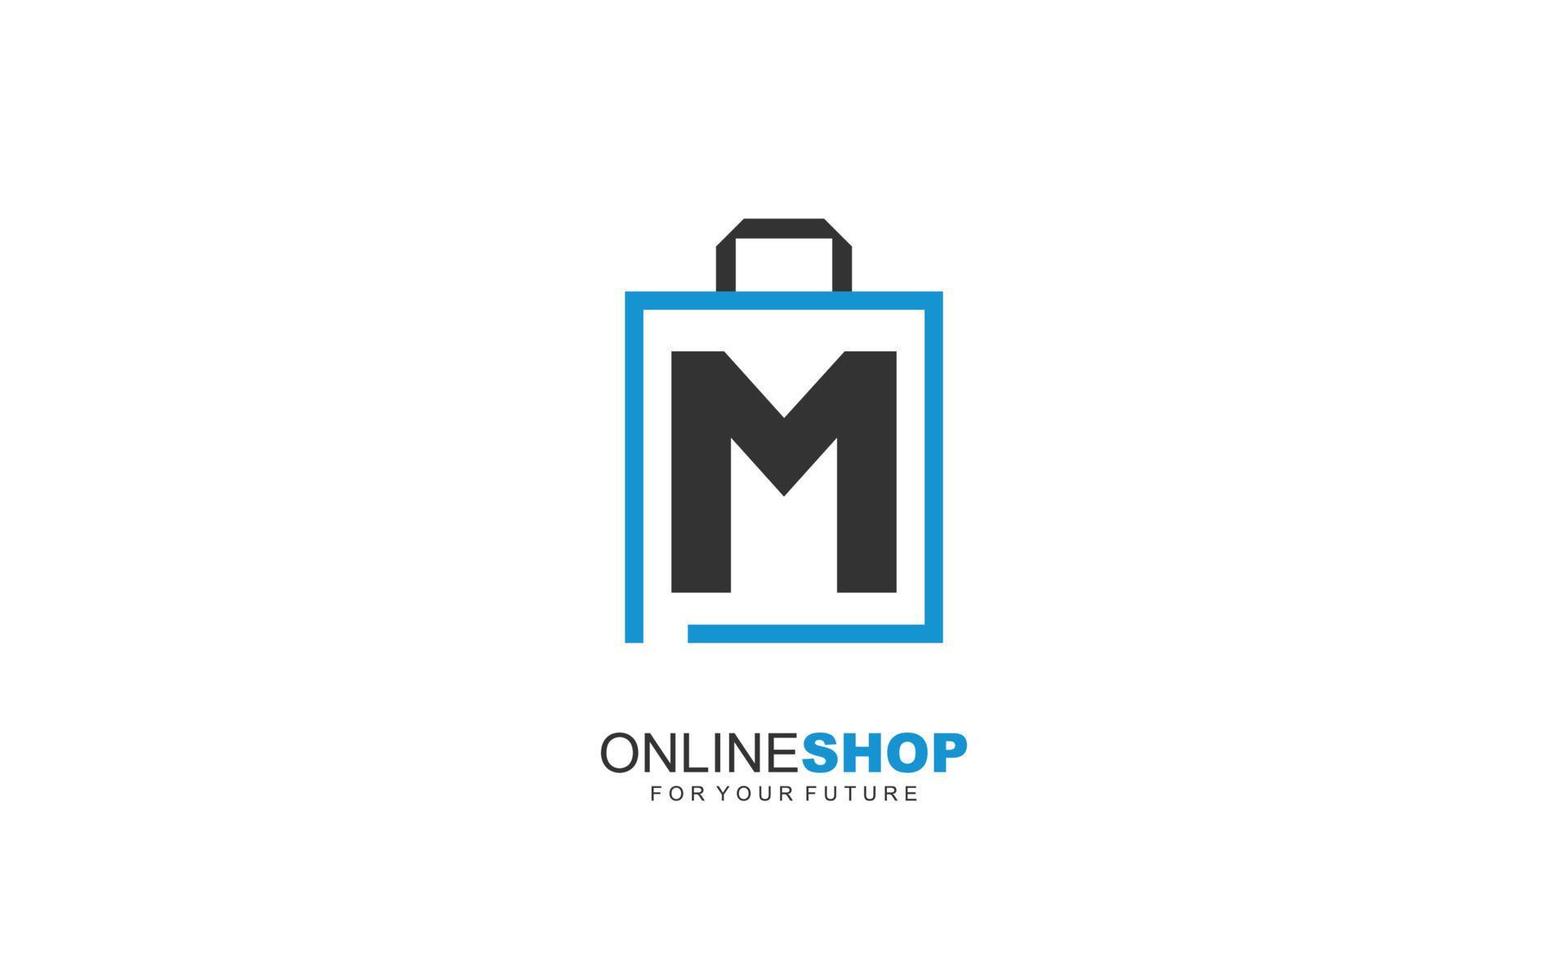 m logo onlineshop para empresa de marca. ilustración de vector de plantilla de bolsa para su marca.